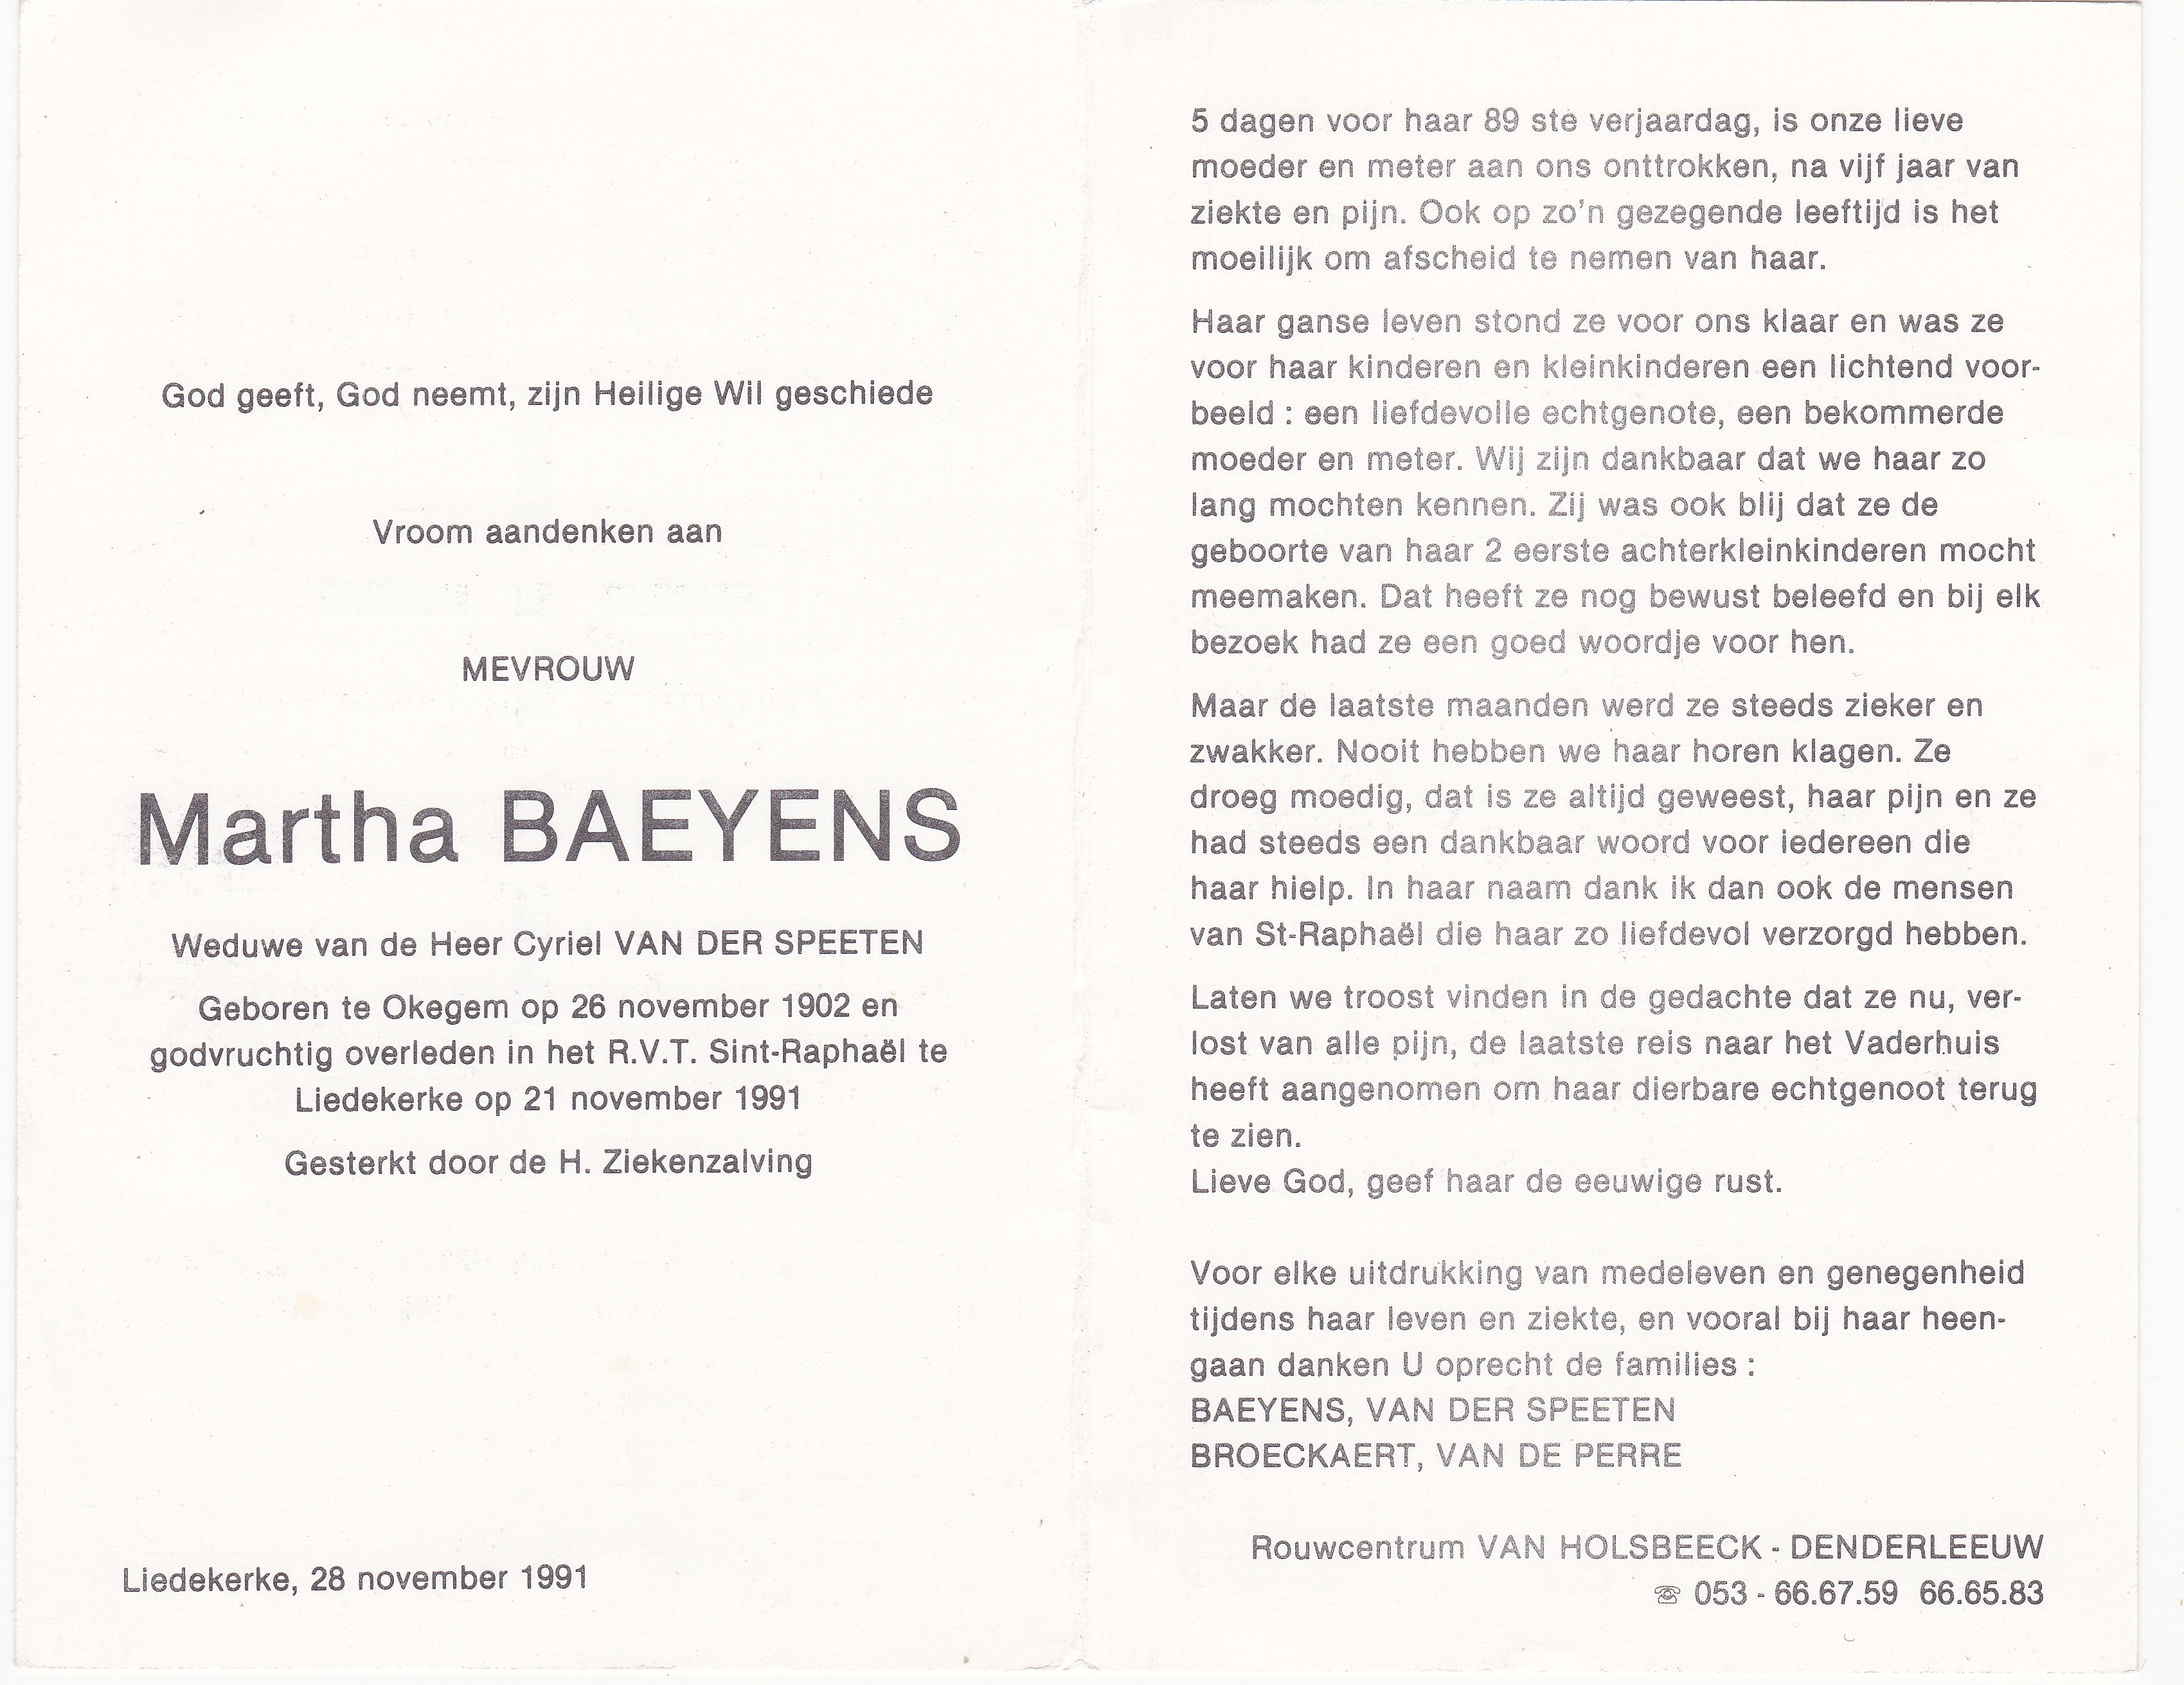 Baeyens Martha